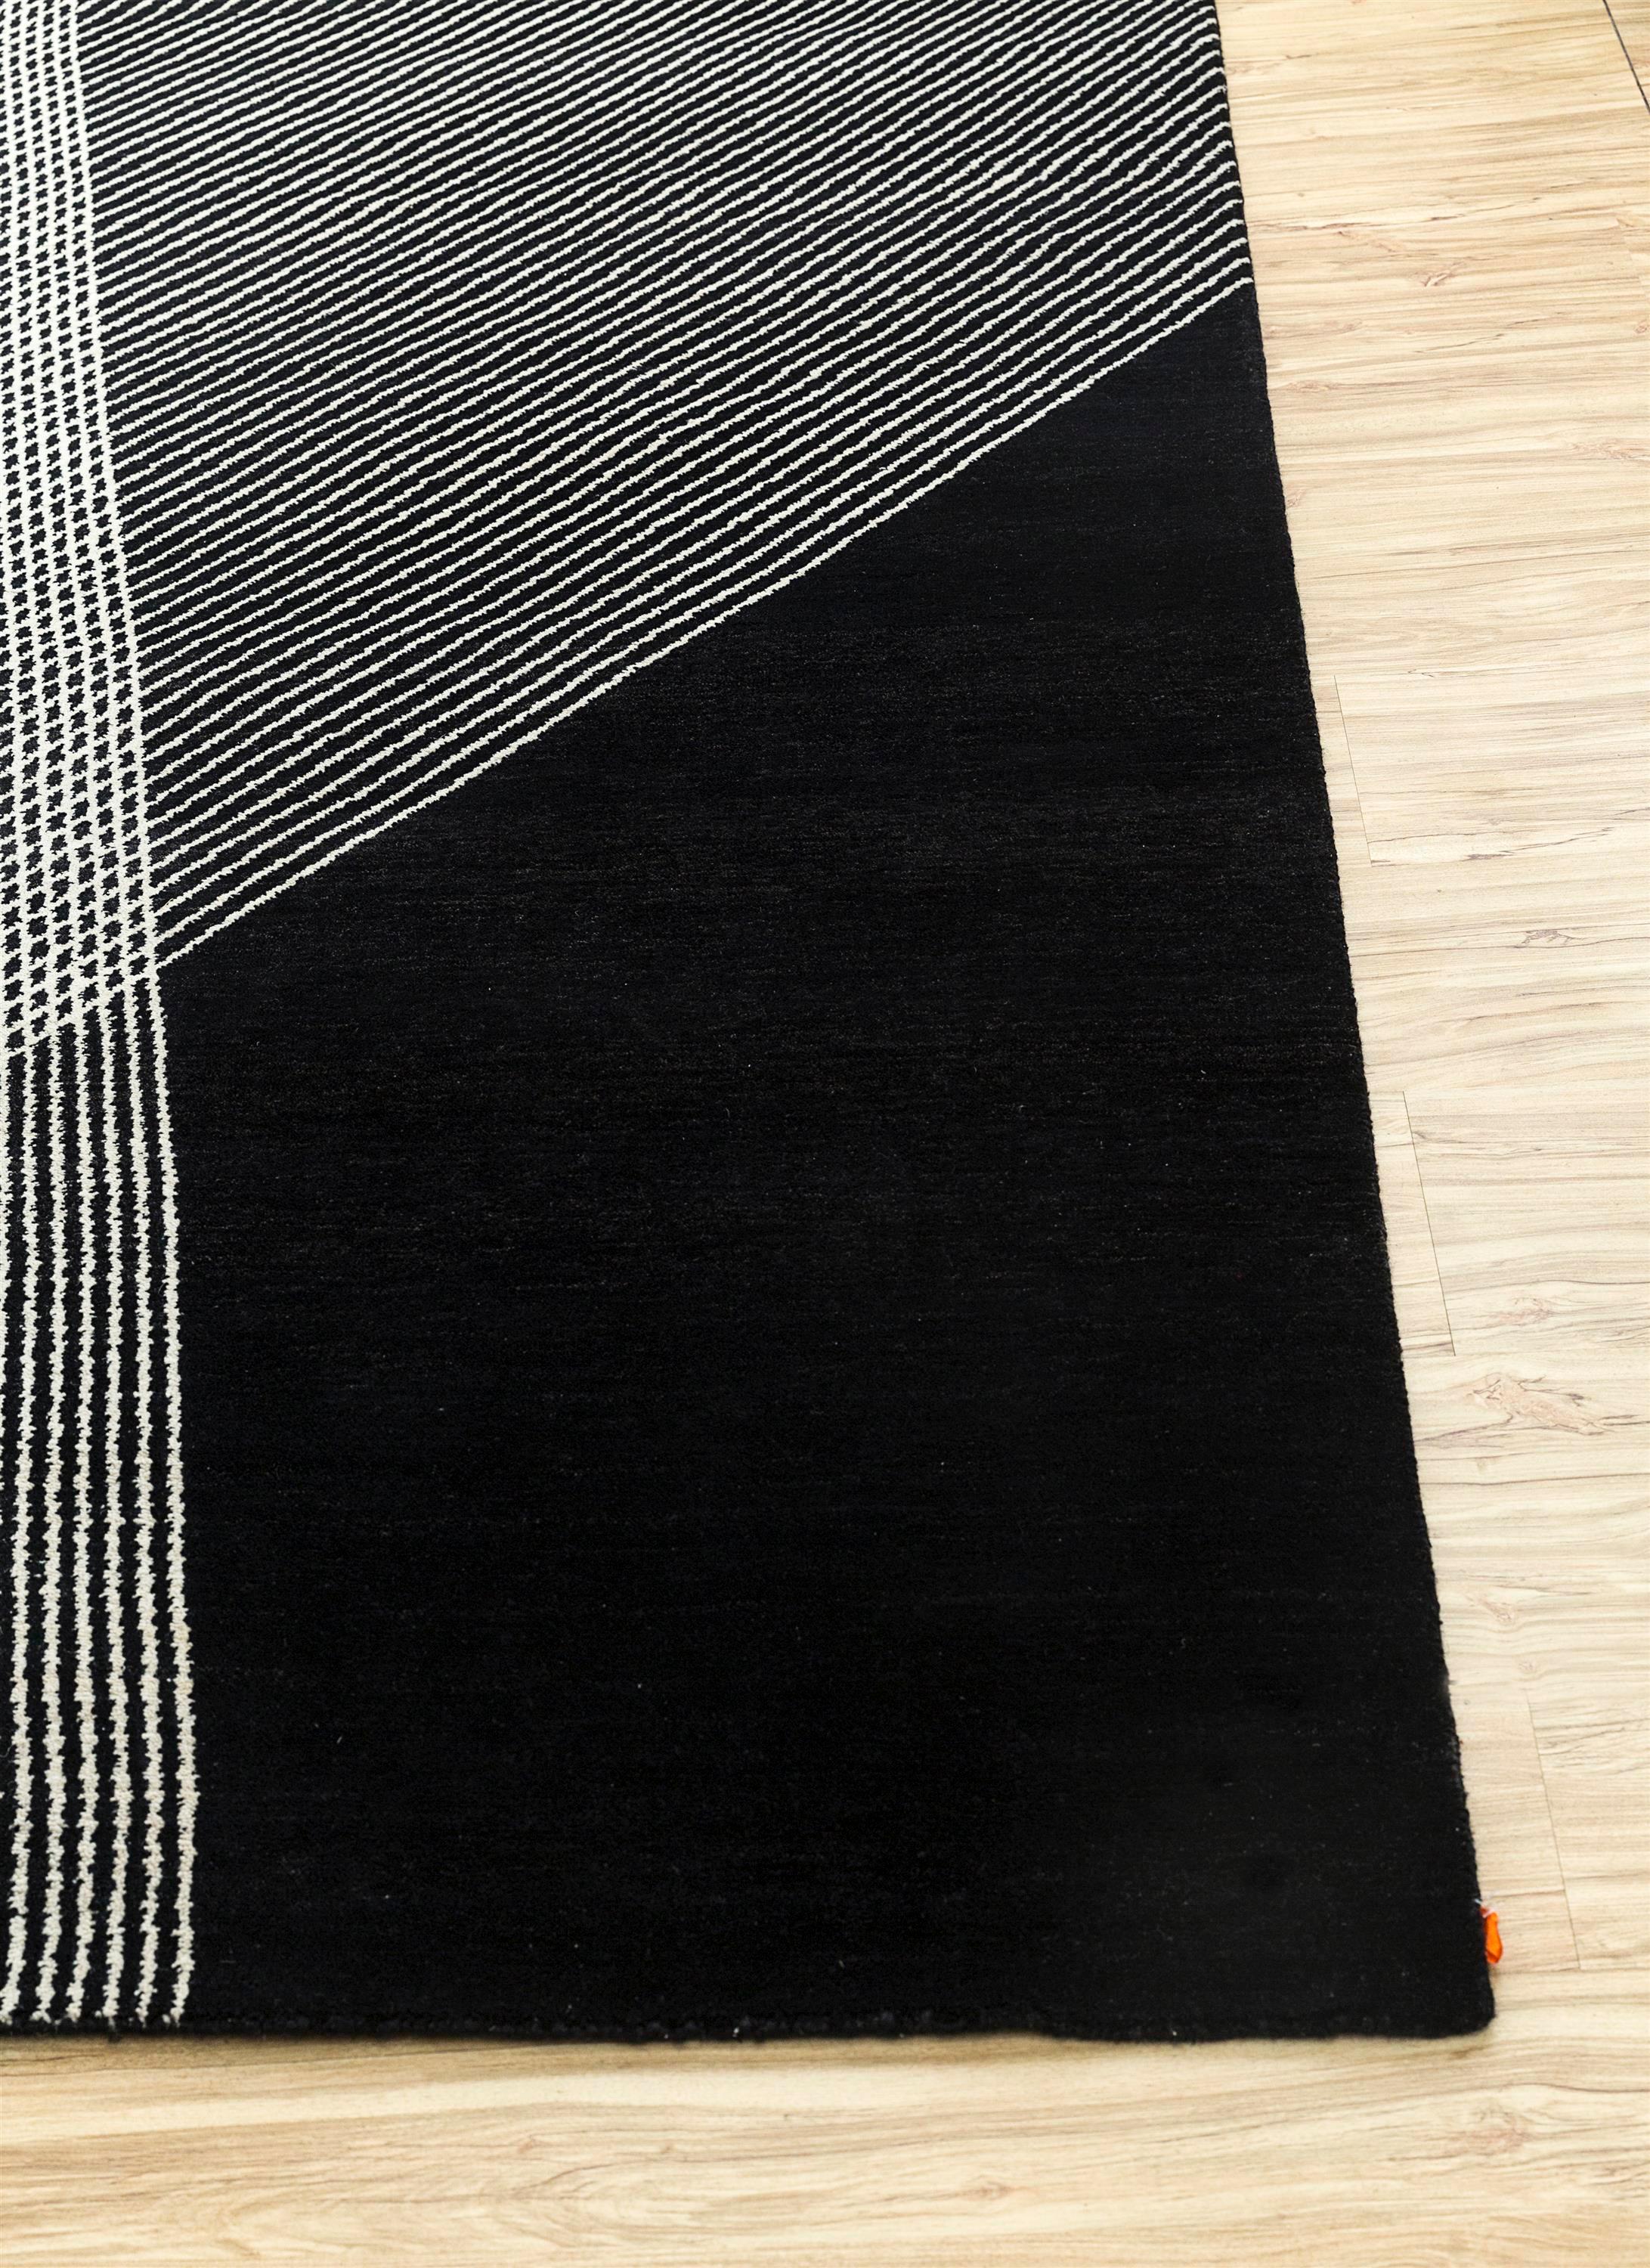 Vous recherchez un tapis géométrique qui transcende le design ordinaire ? Explorez l'extraordinaire avec ce tapis noué à la main. Fabriqué à la main dans l'Inde rurale, il présente un jeu captivant de blocs de couleurs et de lignes symétriques. La